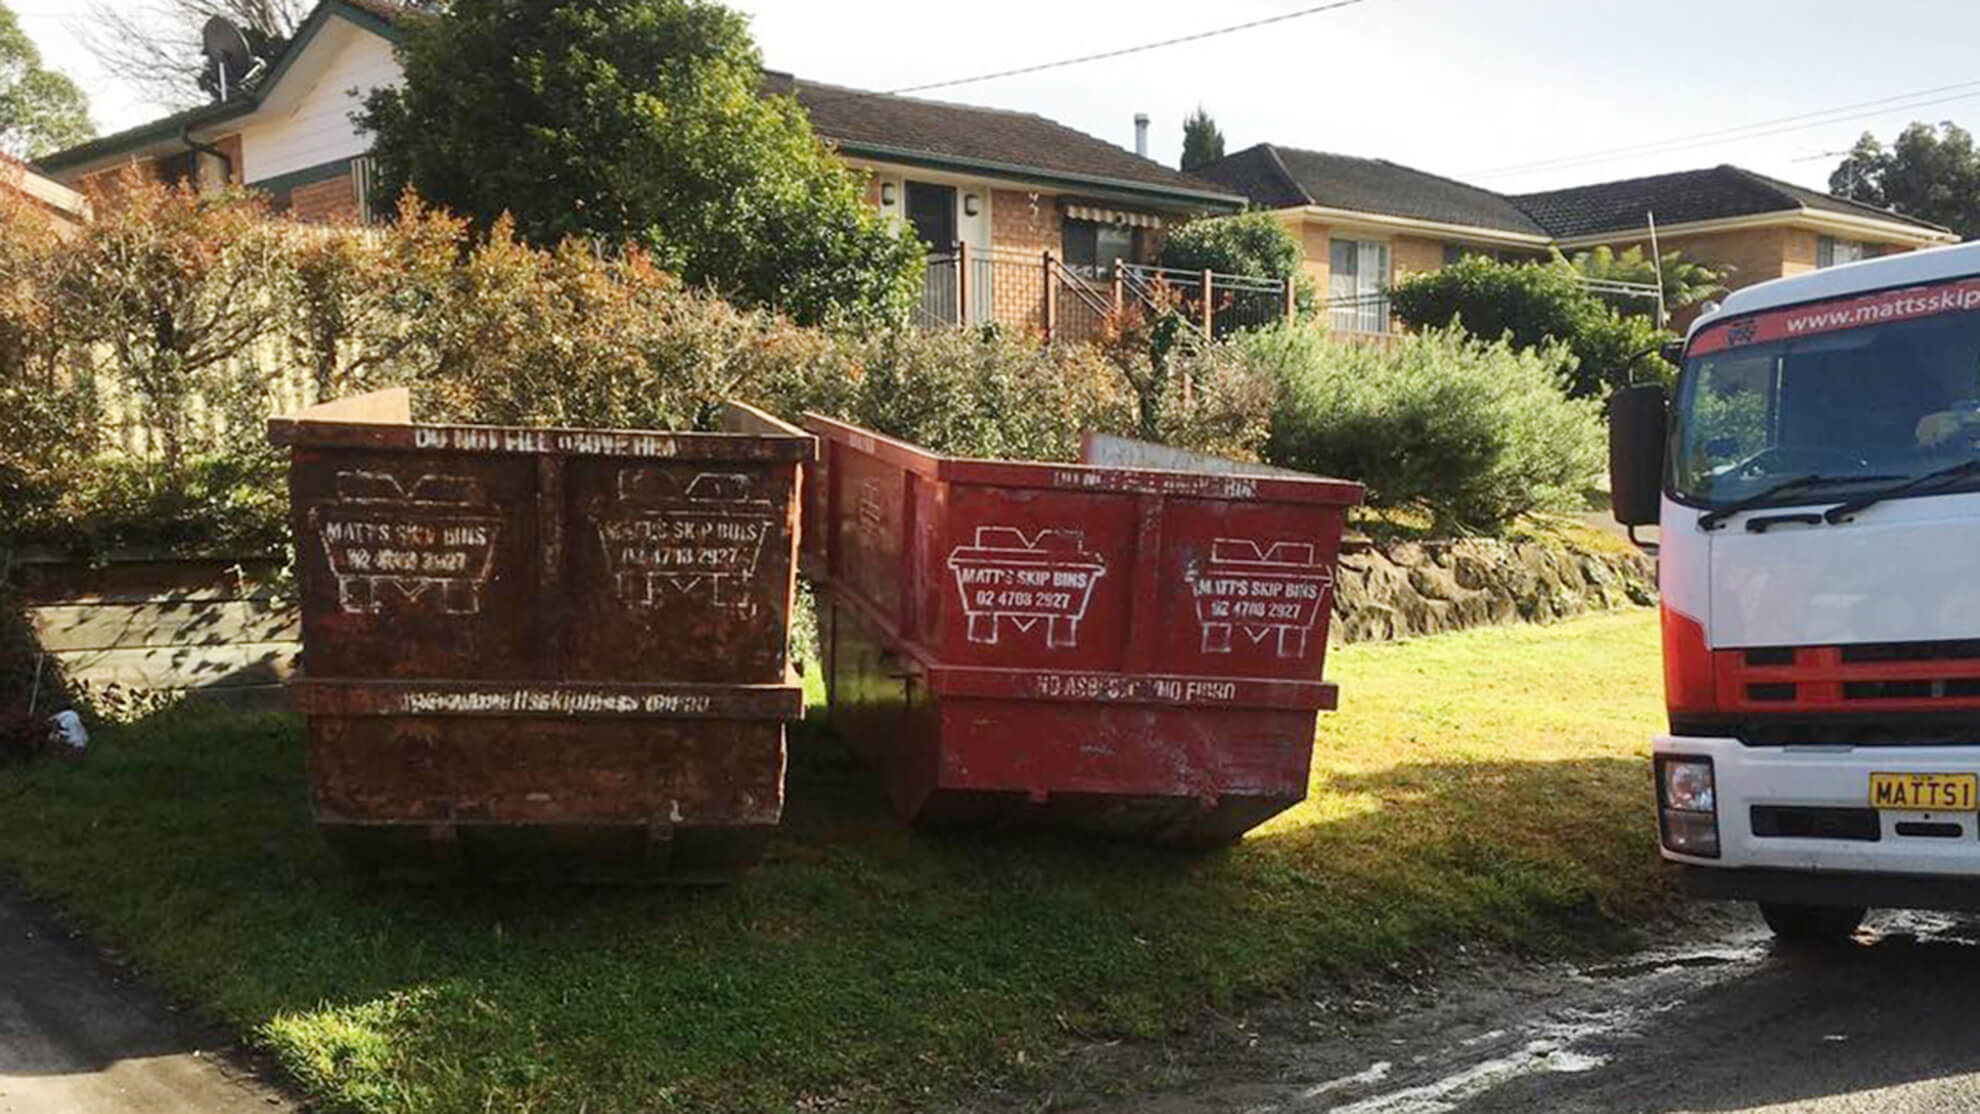 Defining skip bin waste types: green waste